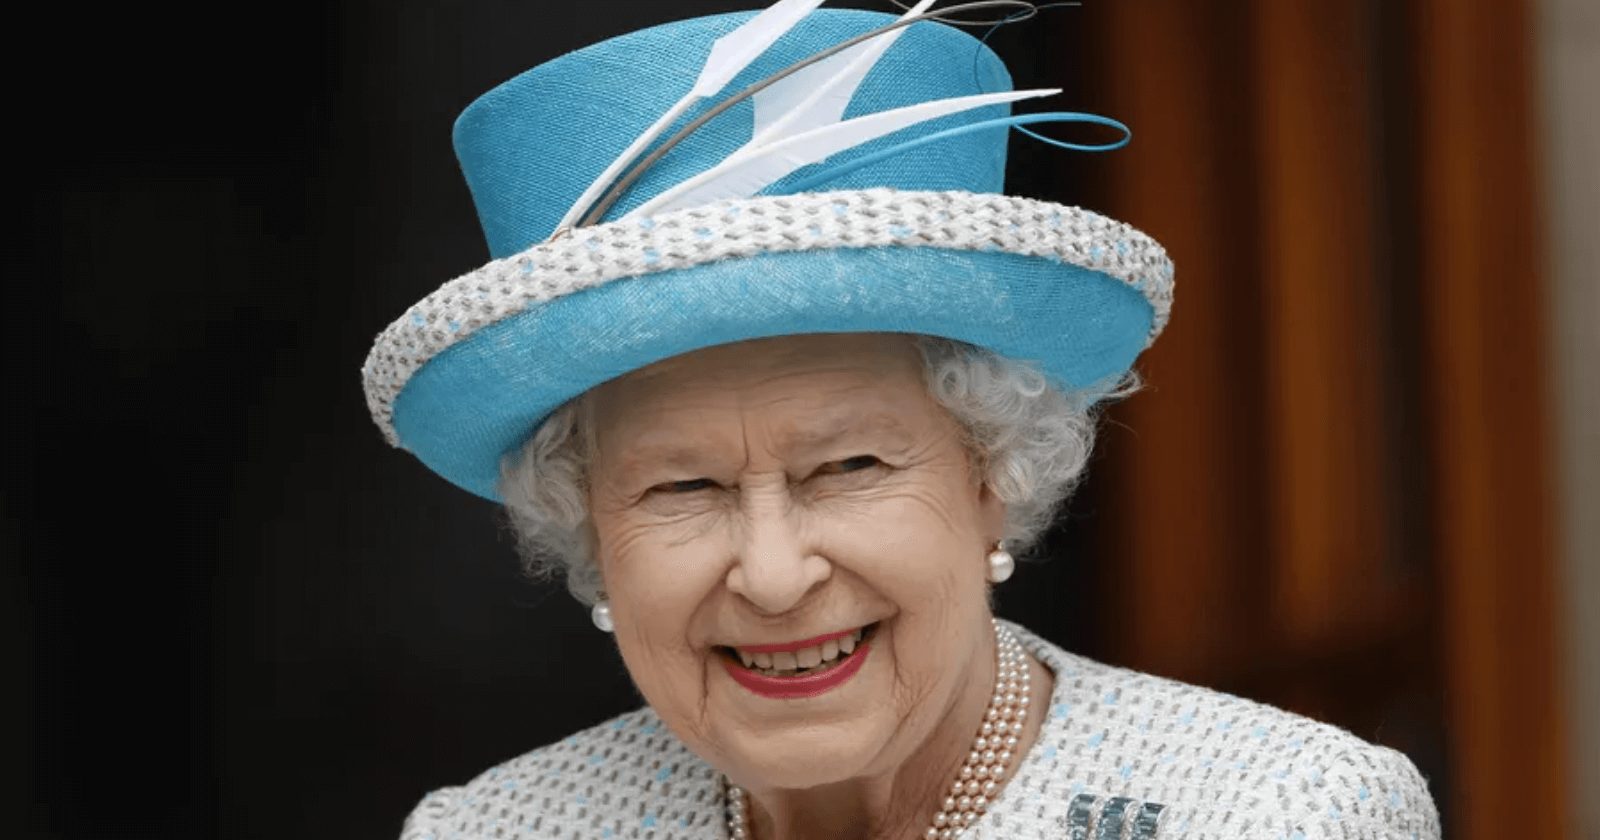 Os últimos desejos da Rainha Elizabeth II antes do seu falecimento conseguem tocar corações